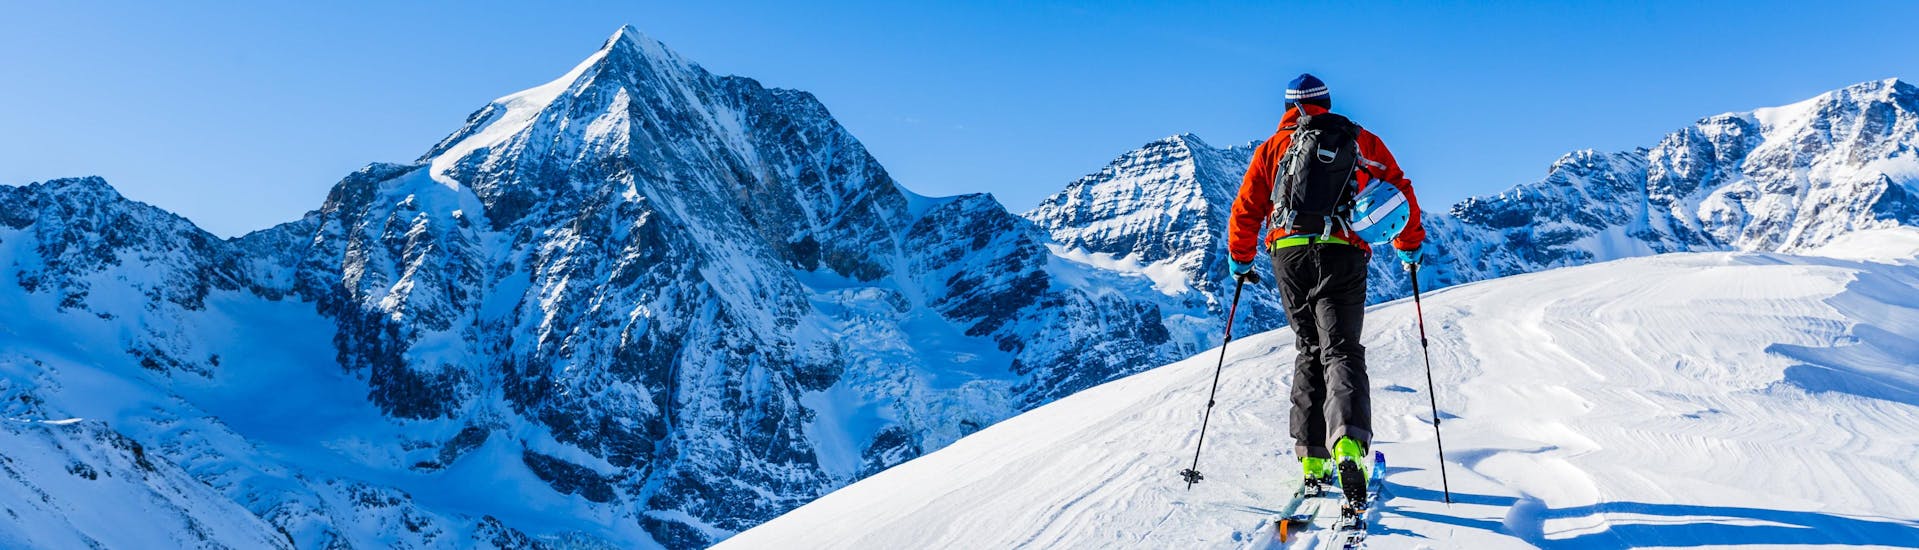 Un uomo sta esplorando il paesaggio innevato mentre fa sci alpinismo.